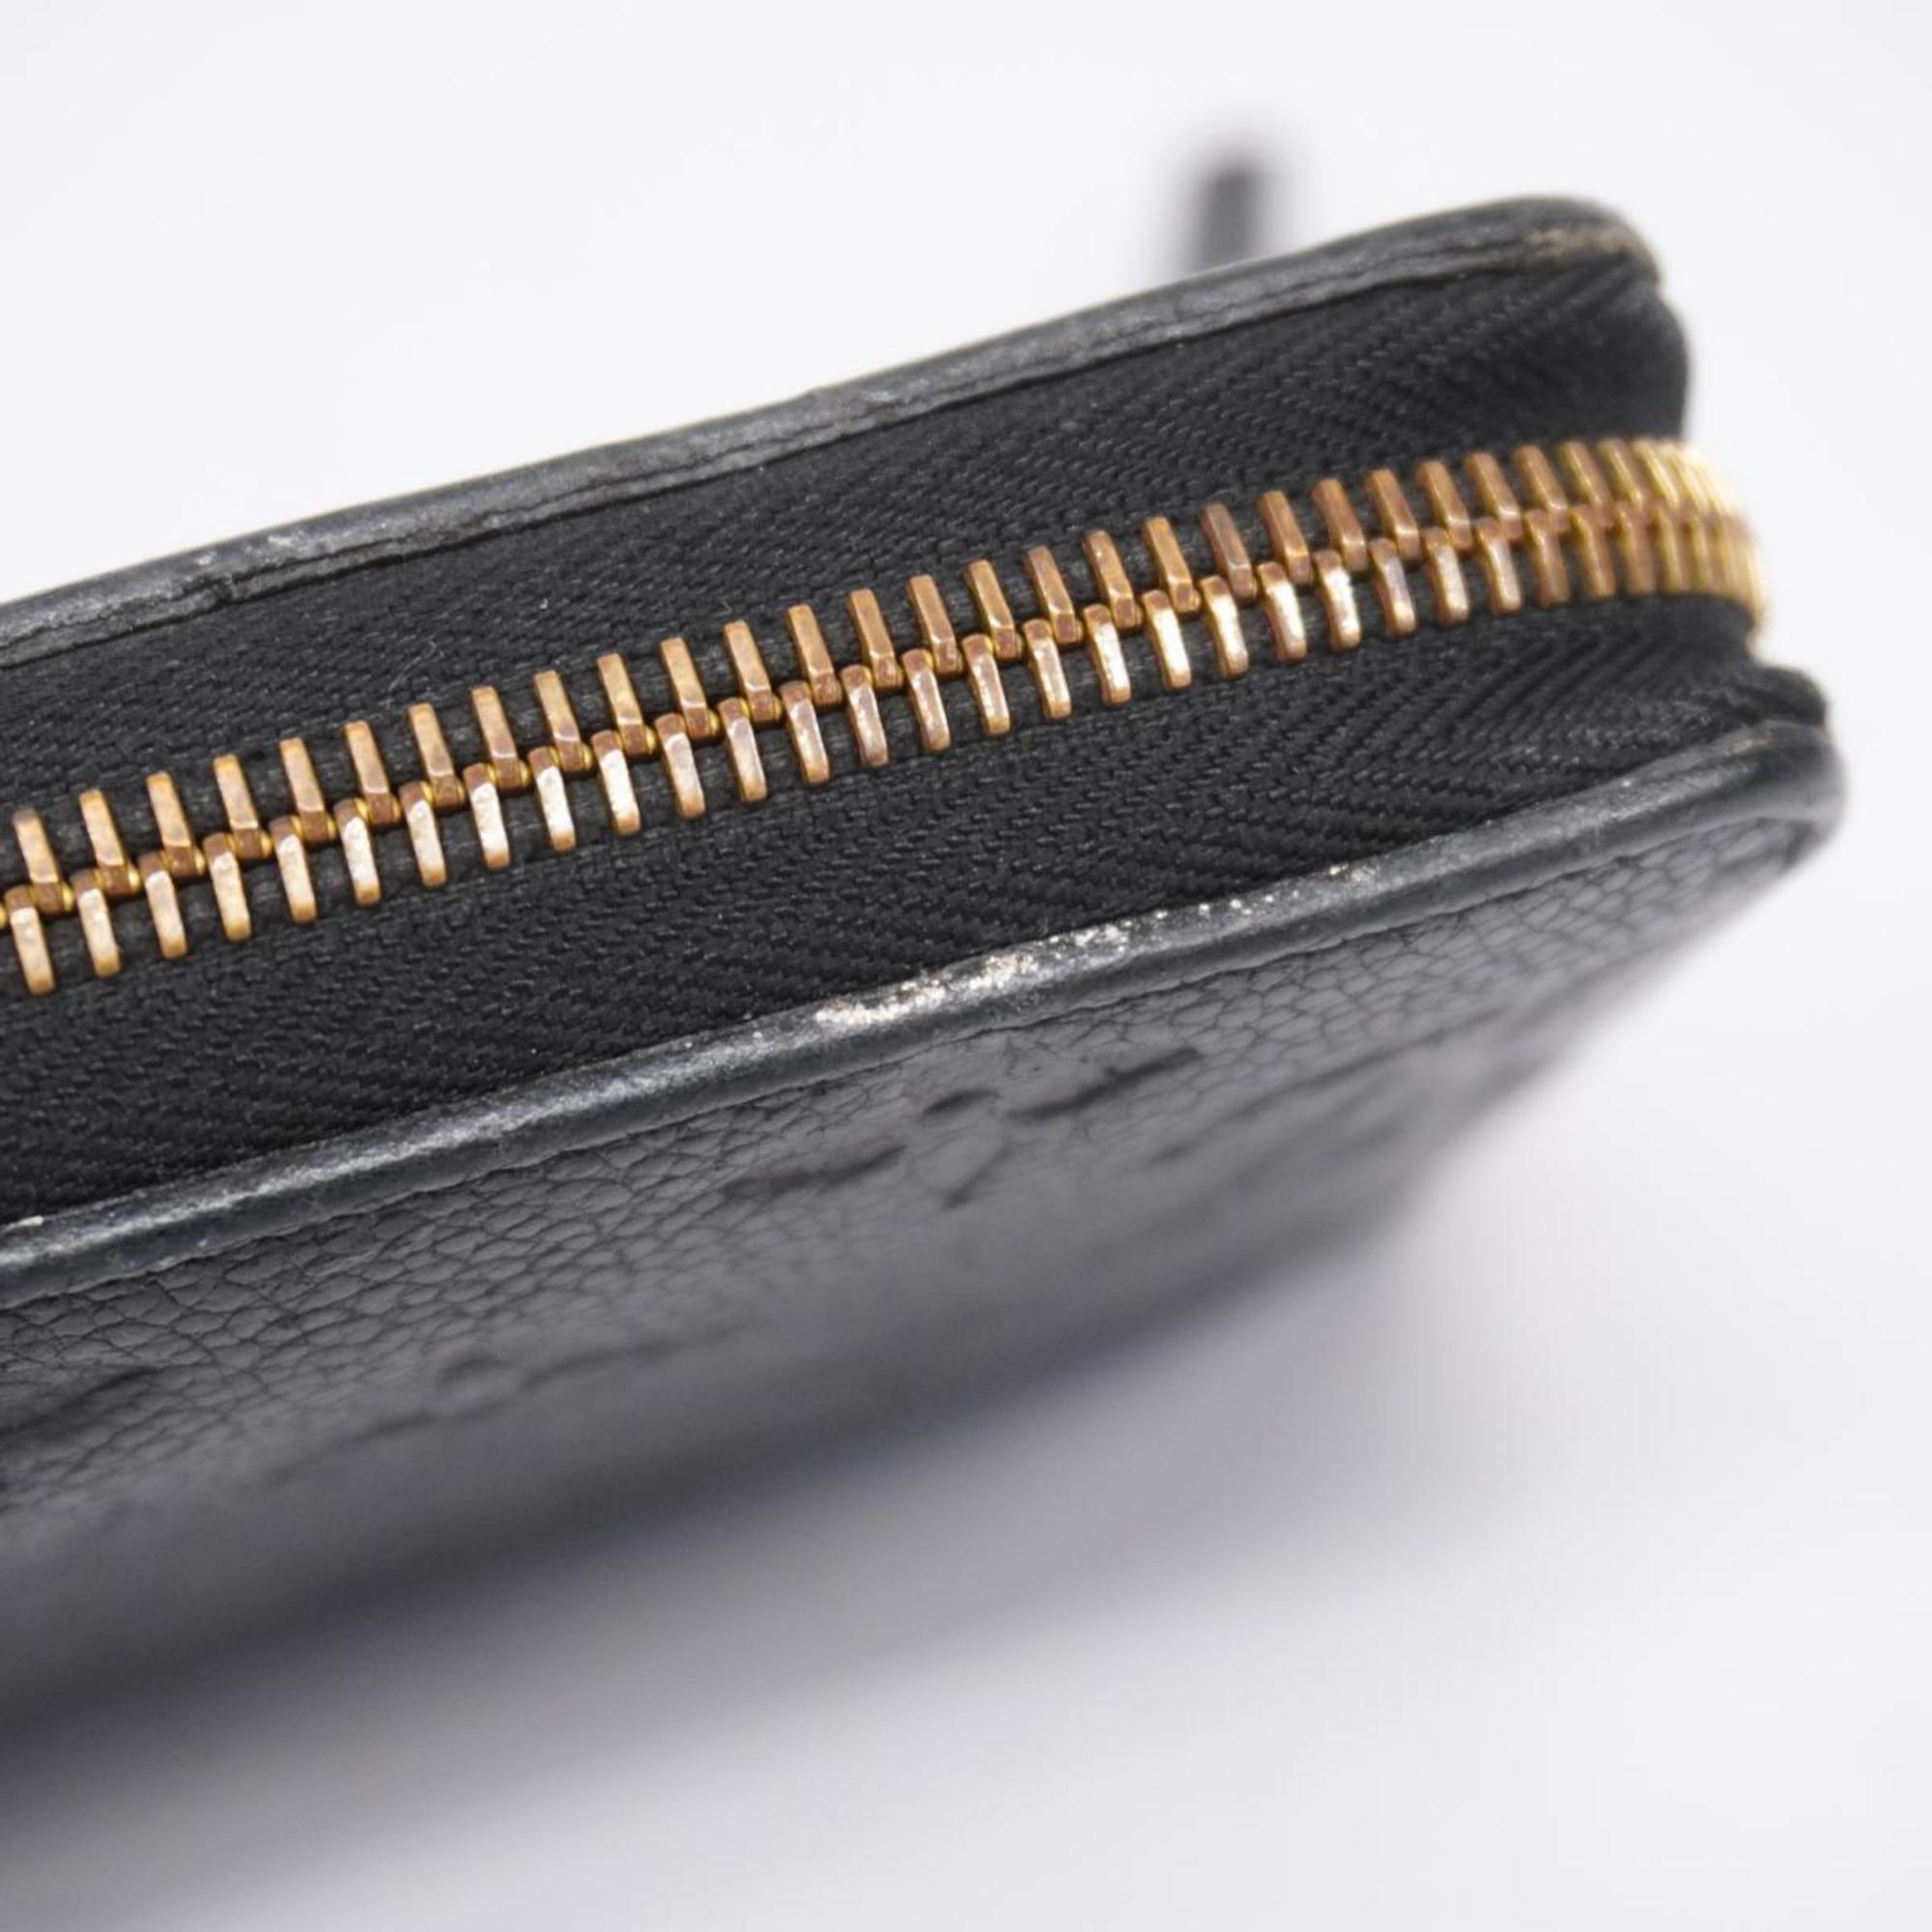 Louis Vuitton Long Wallet Monogram Empreinte Zippy M60571 Noir Ladies